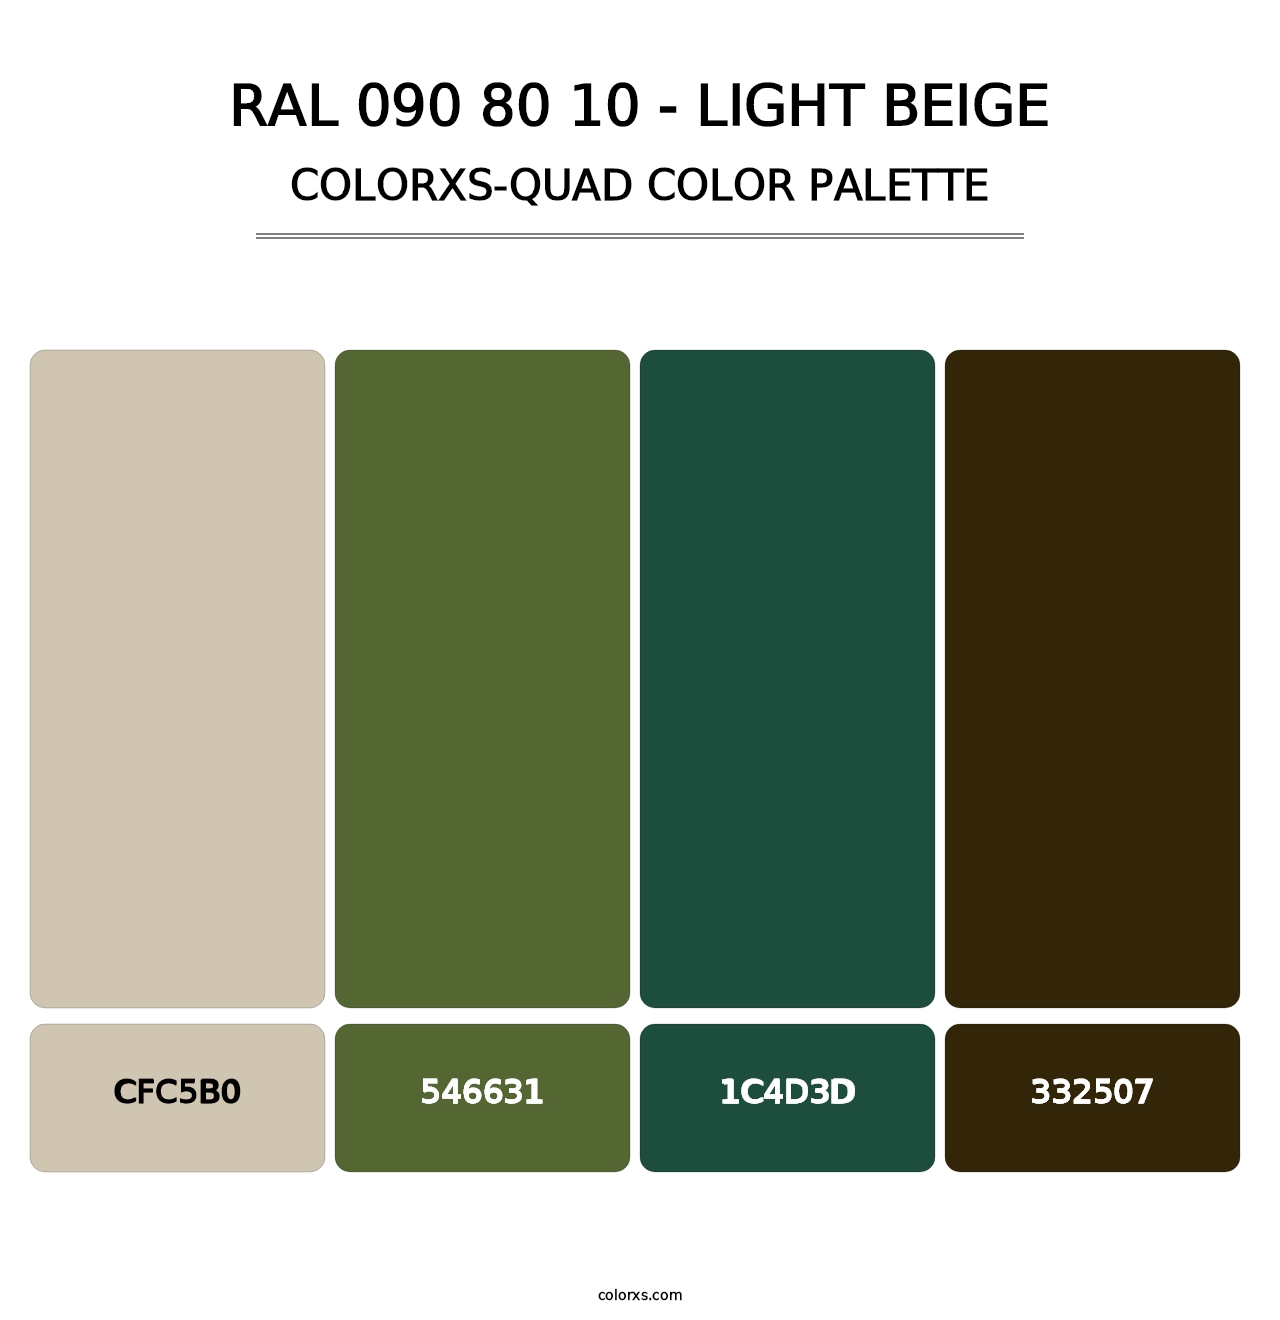 RAL 090 80 10 - Light Beige - Colorxs Quad Palette